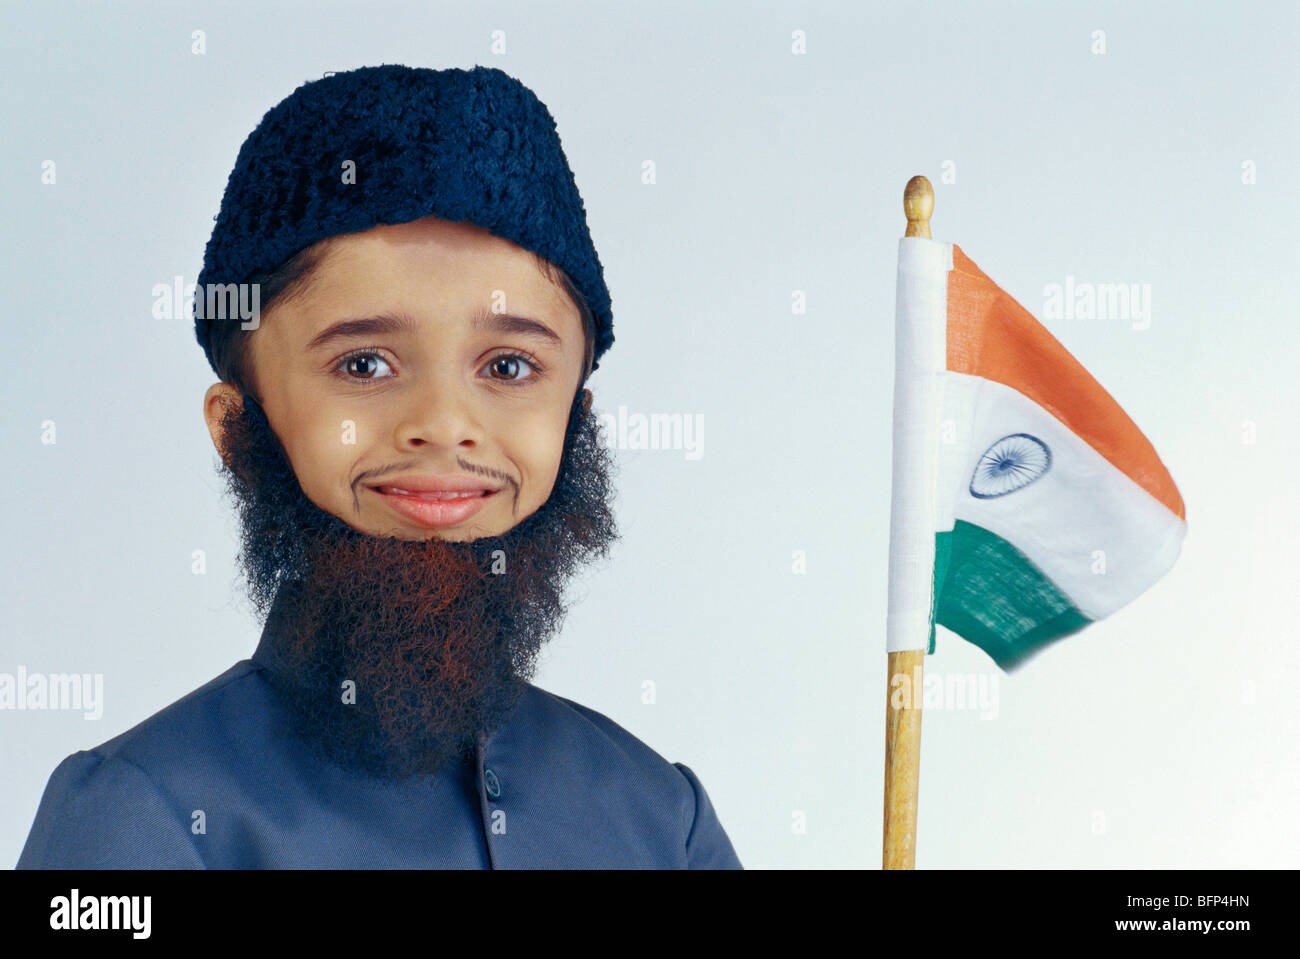 Indisches Knabe Kind in Kostümkleid von Muslim mit Bart und Mütze, die  Flagge von Indien in der Hand hält ; Indien ; Asien ; MR#496  Stockfotografie - Alamy